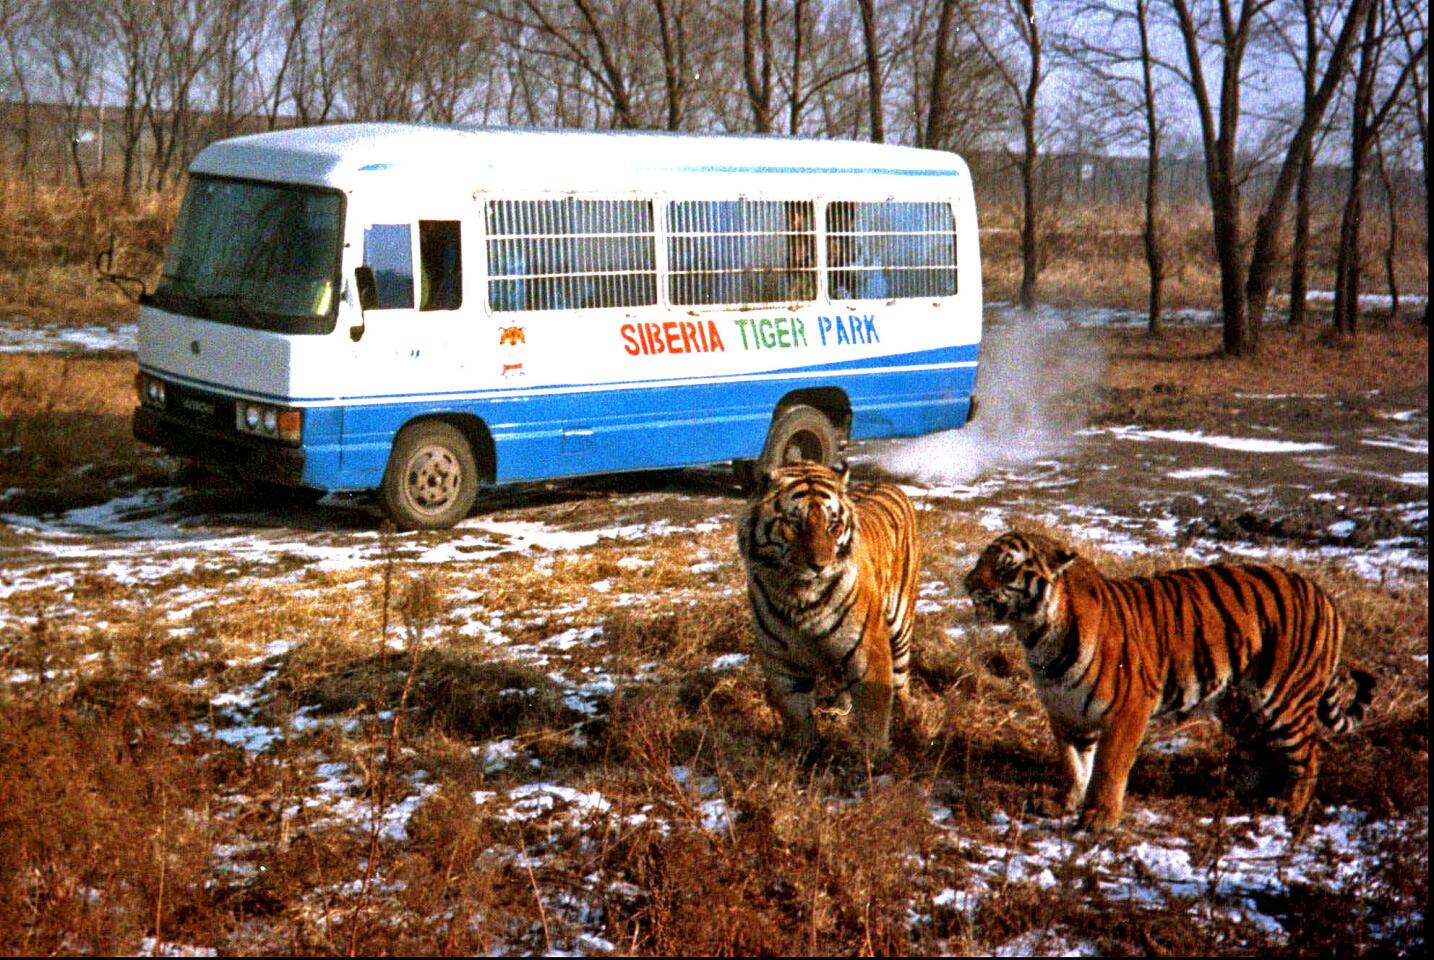 Siberian tigers in China